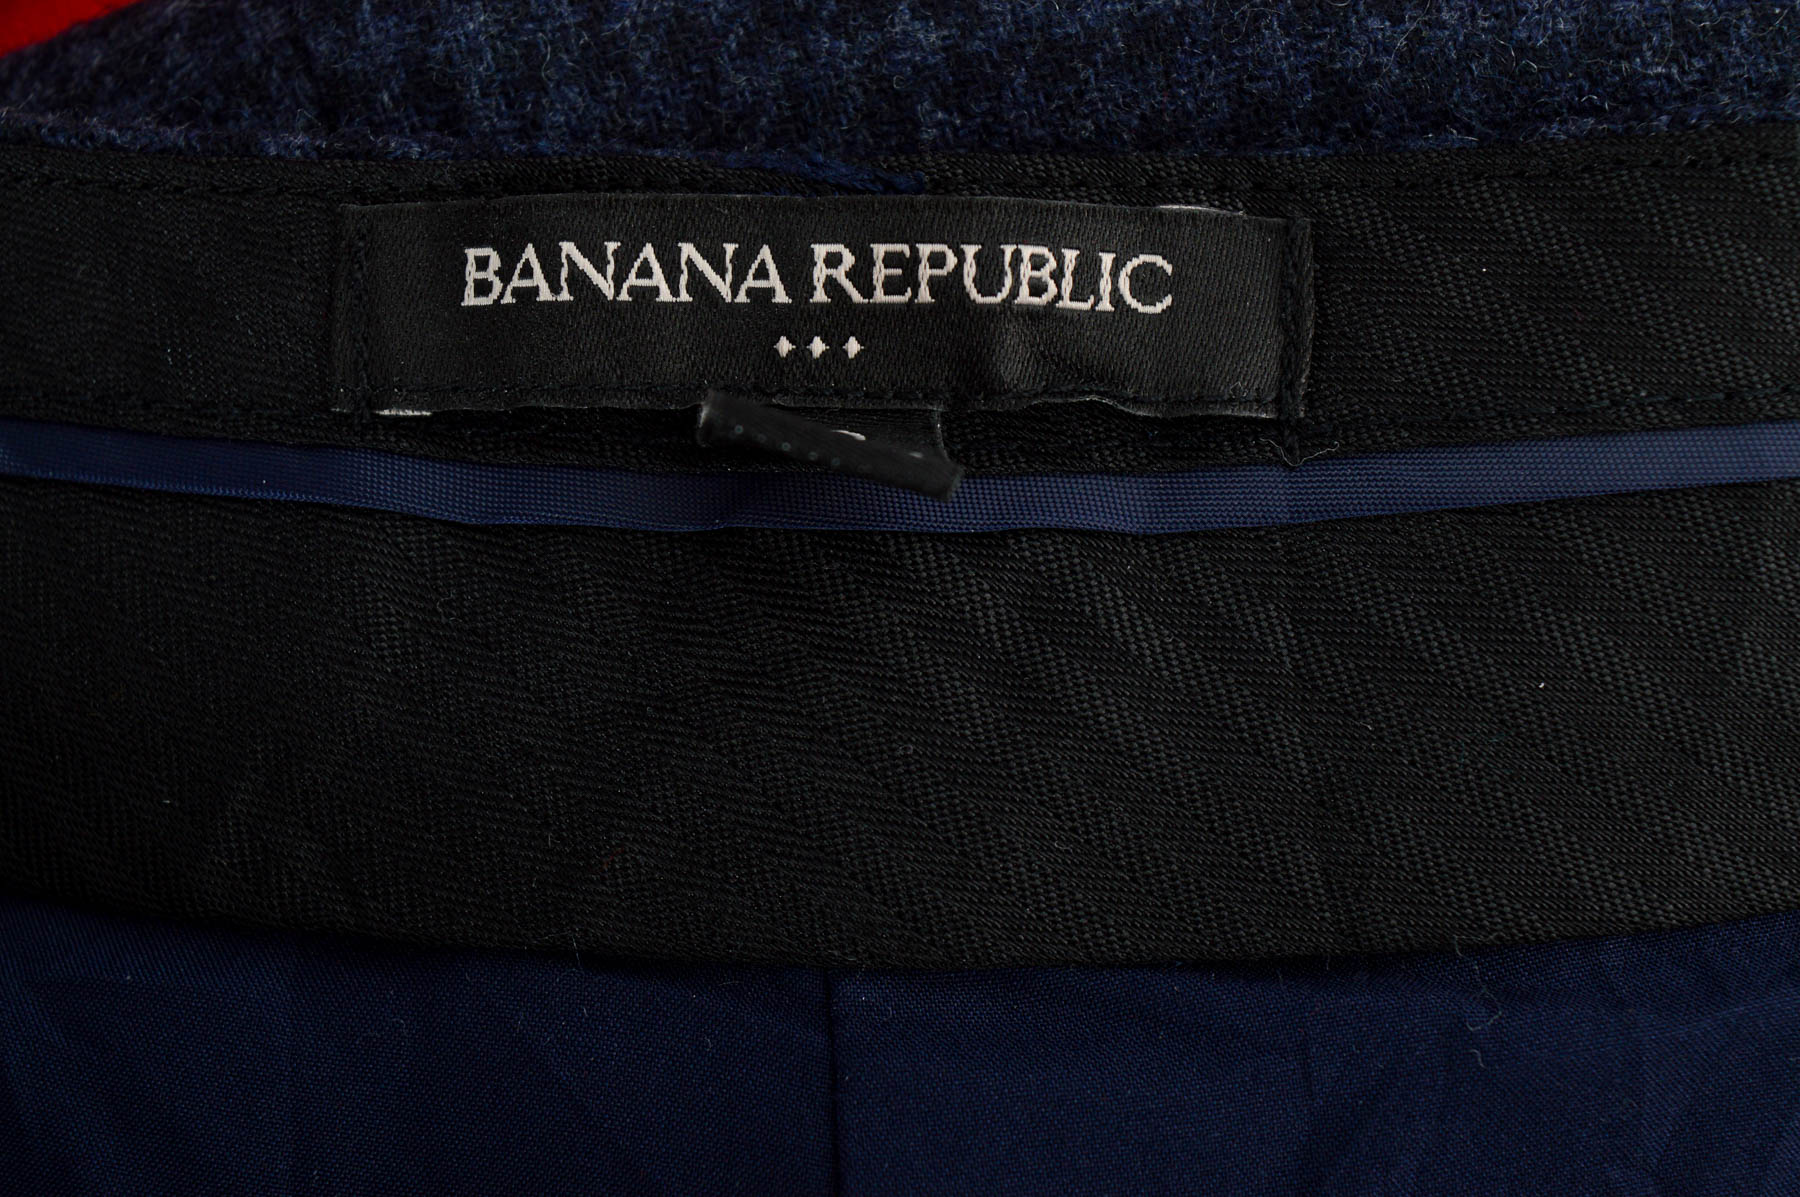 Women's trousers - BANANA REPUBLIC - 2